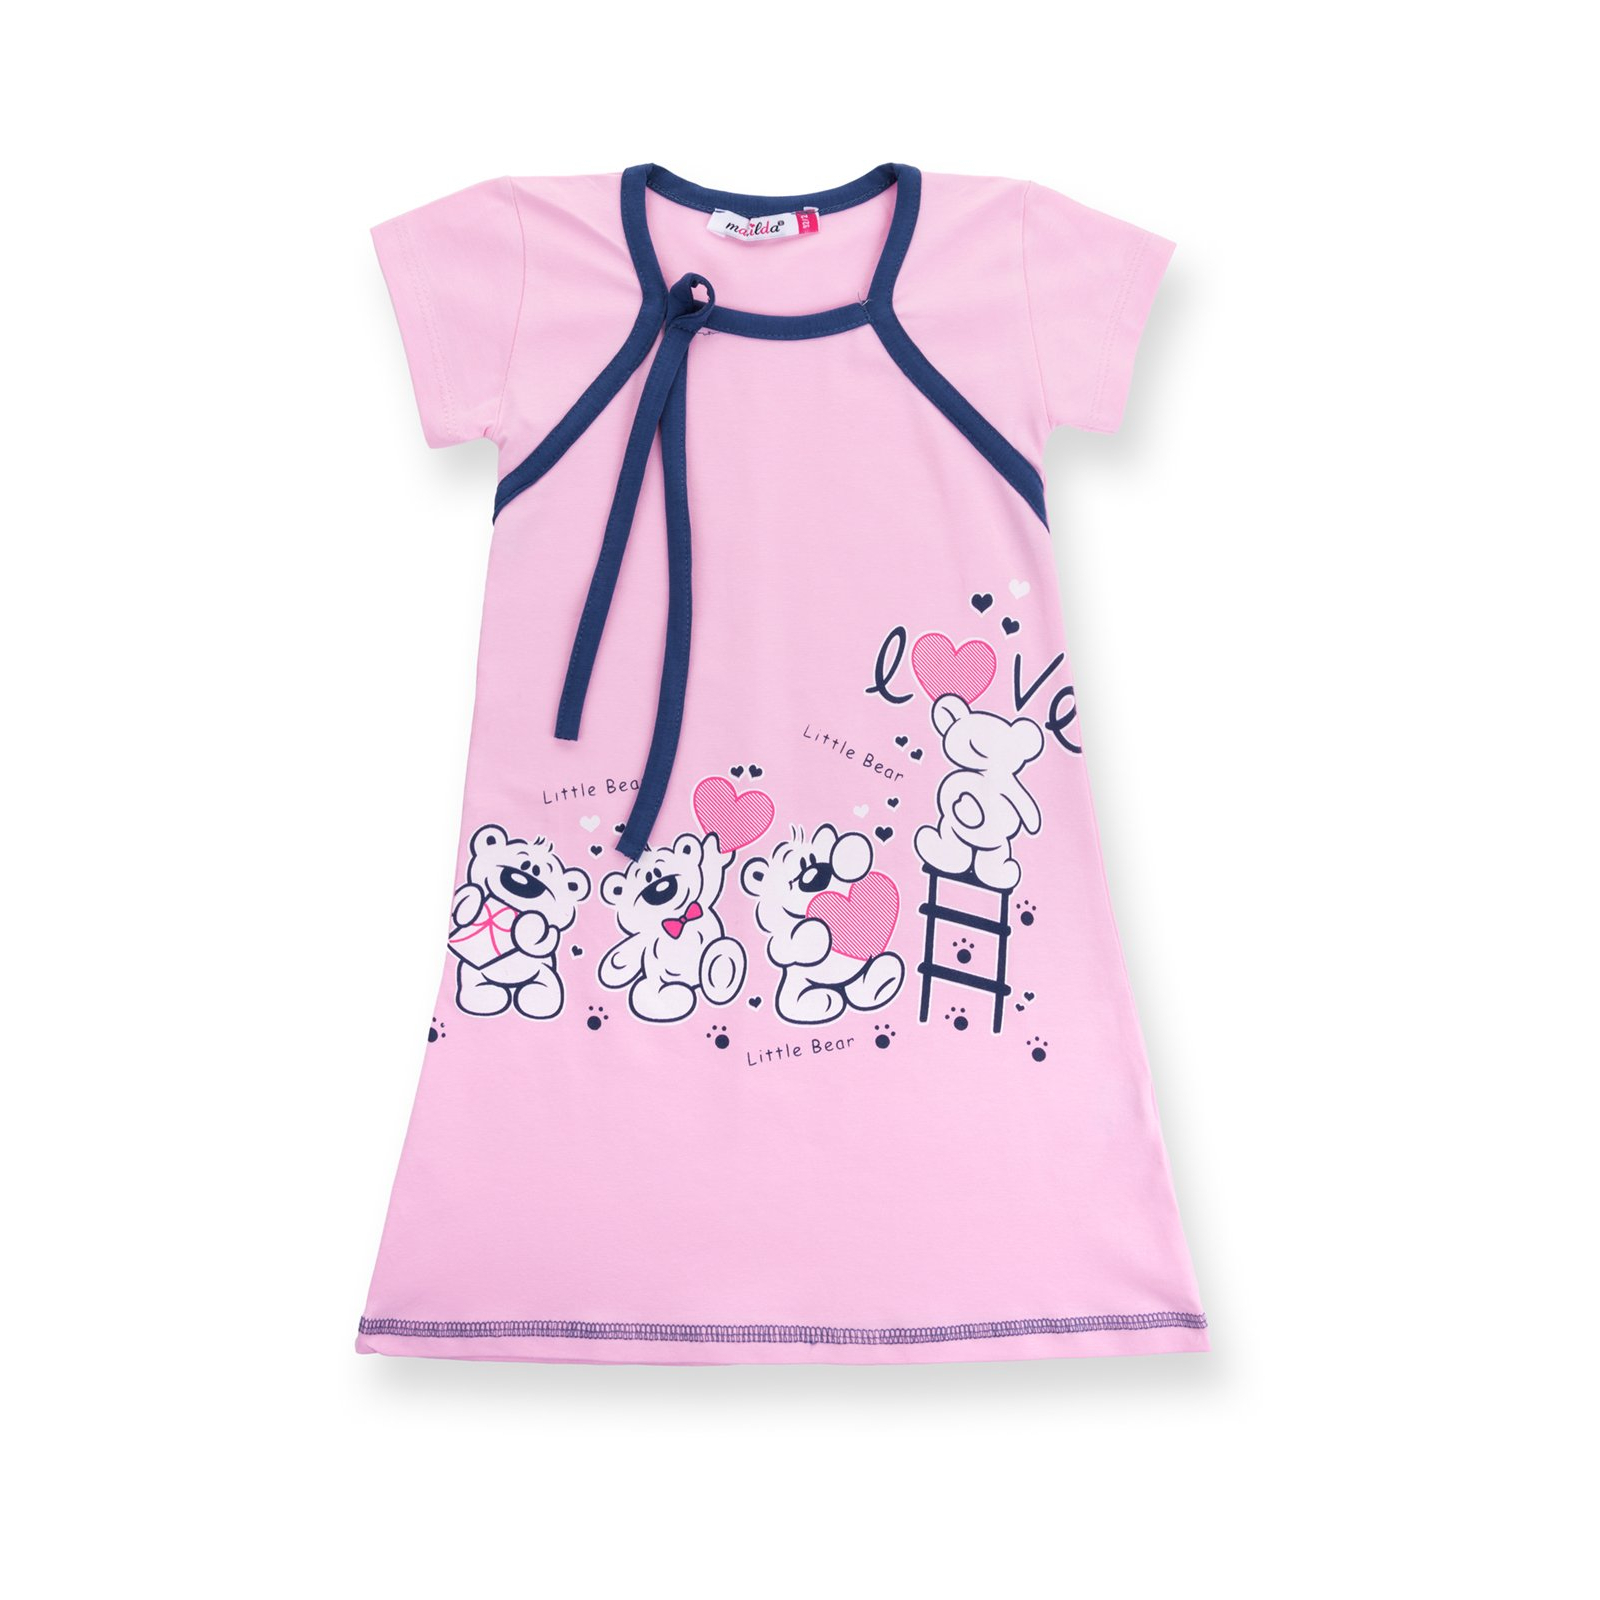 Пижама Matilda и халат с мишками "Love" (7445-116G-pink) изображение 3